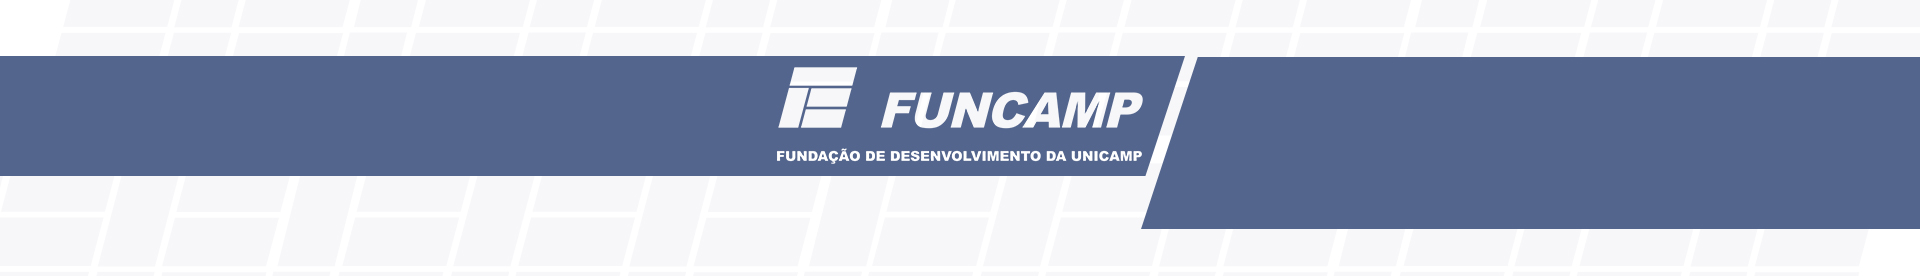 banner - Exercício Físico 2019